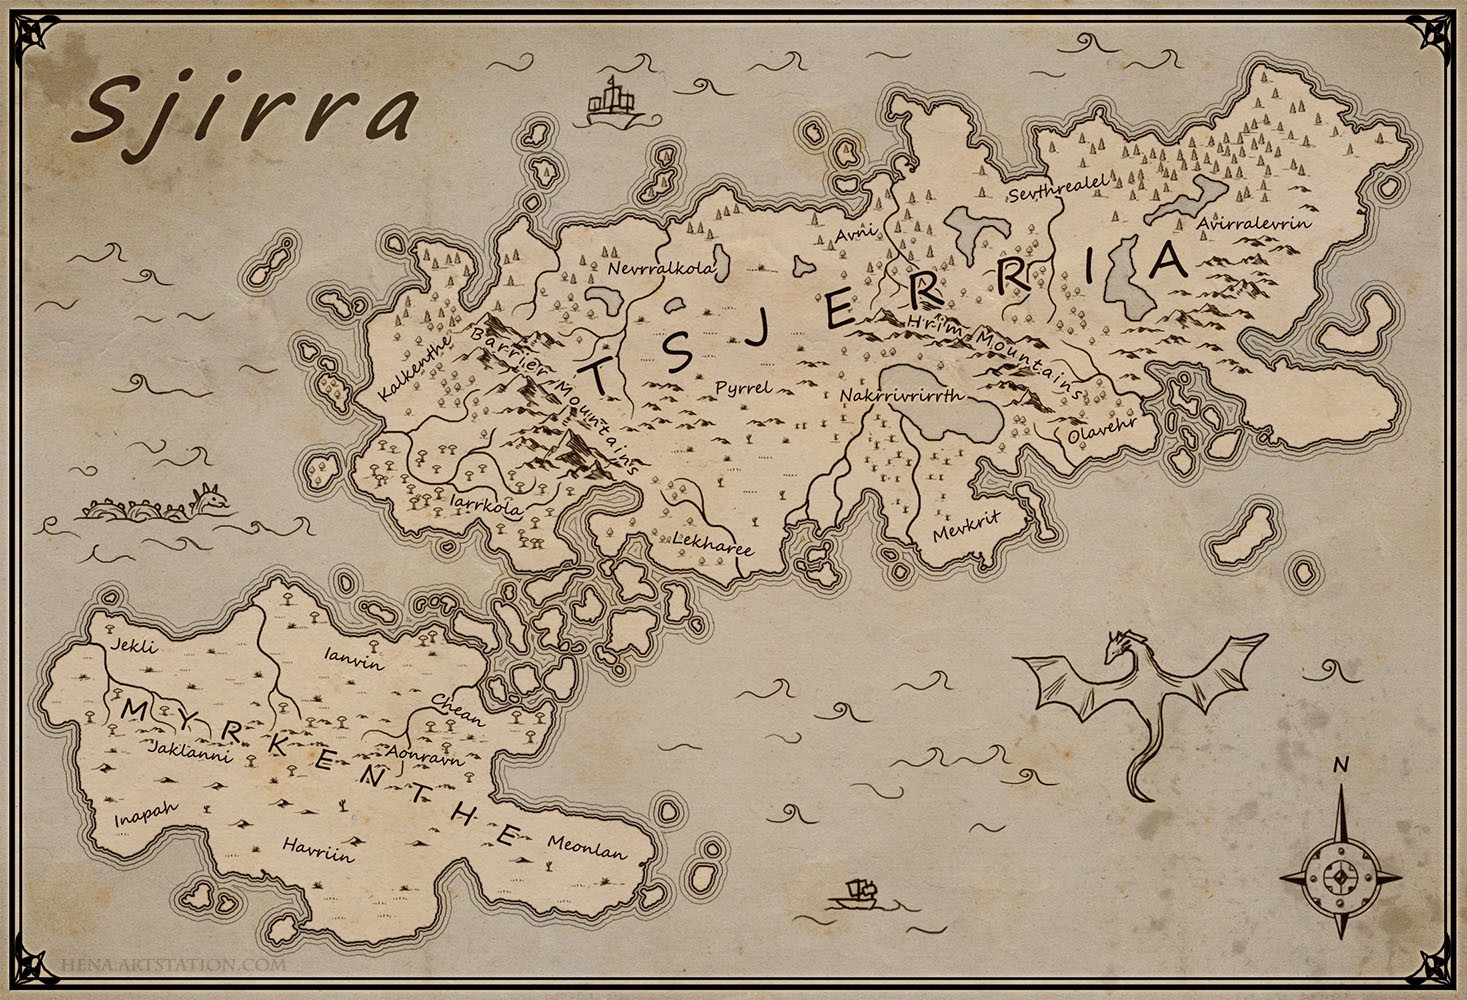 Map of Sjirra